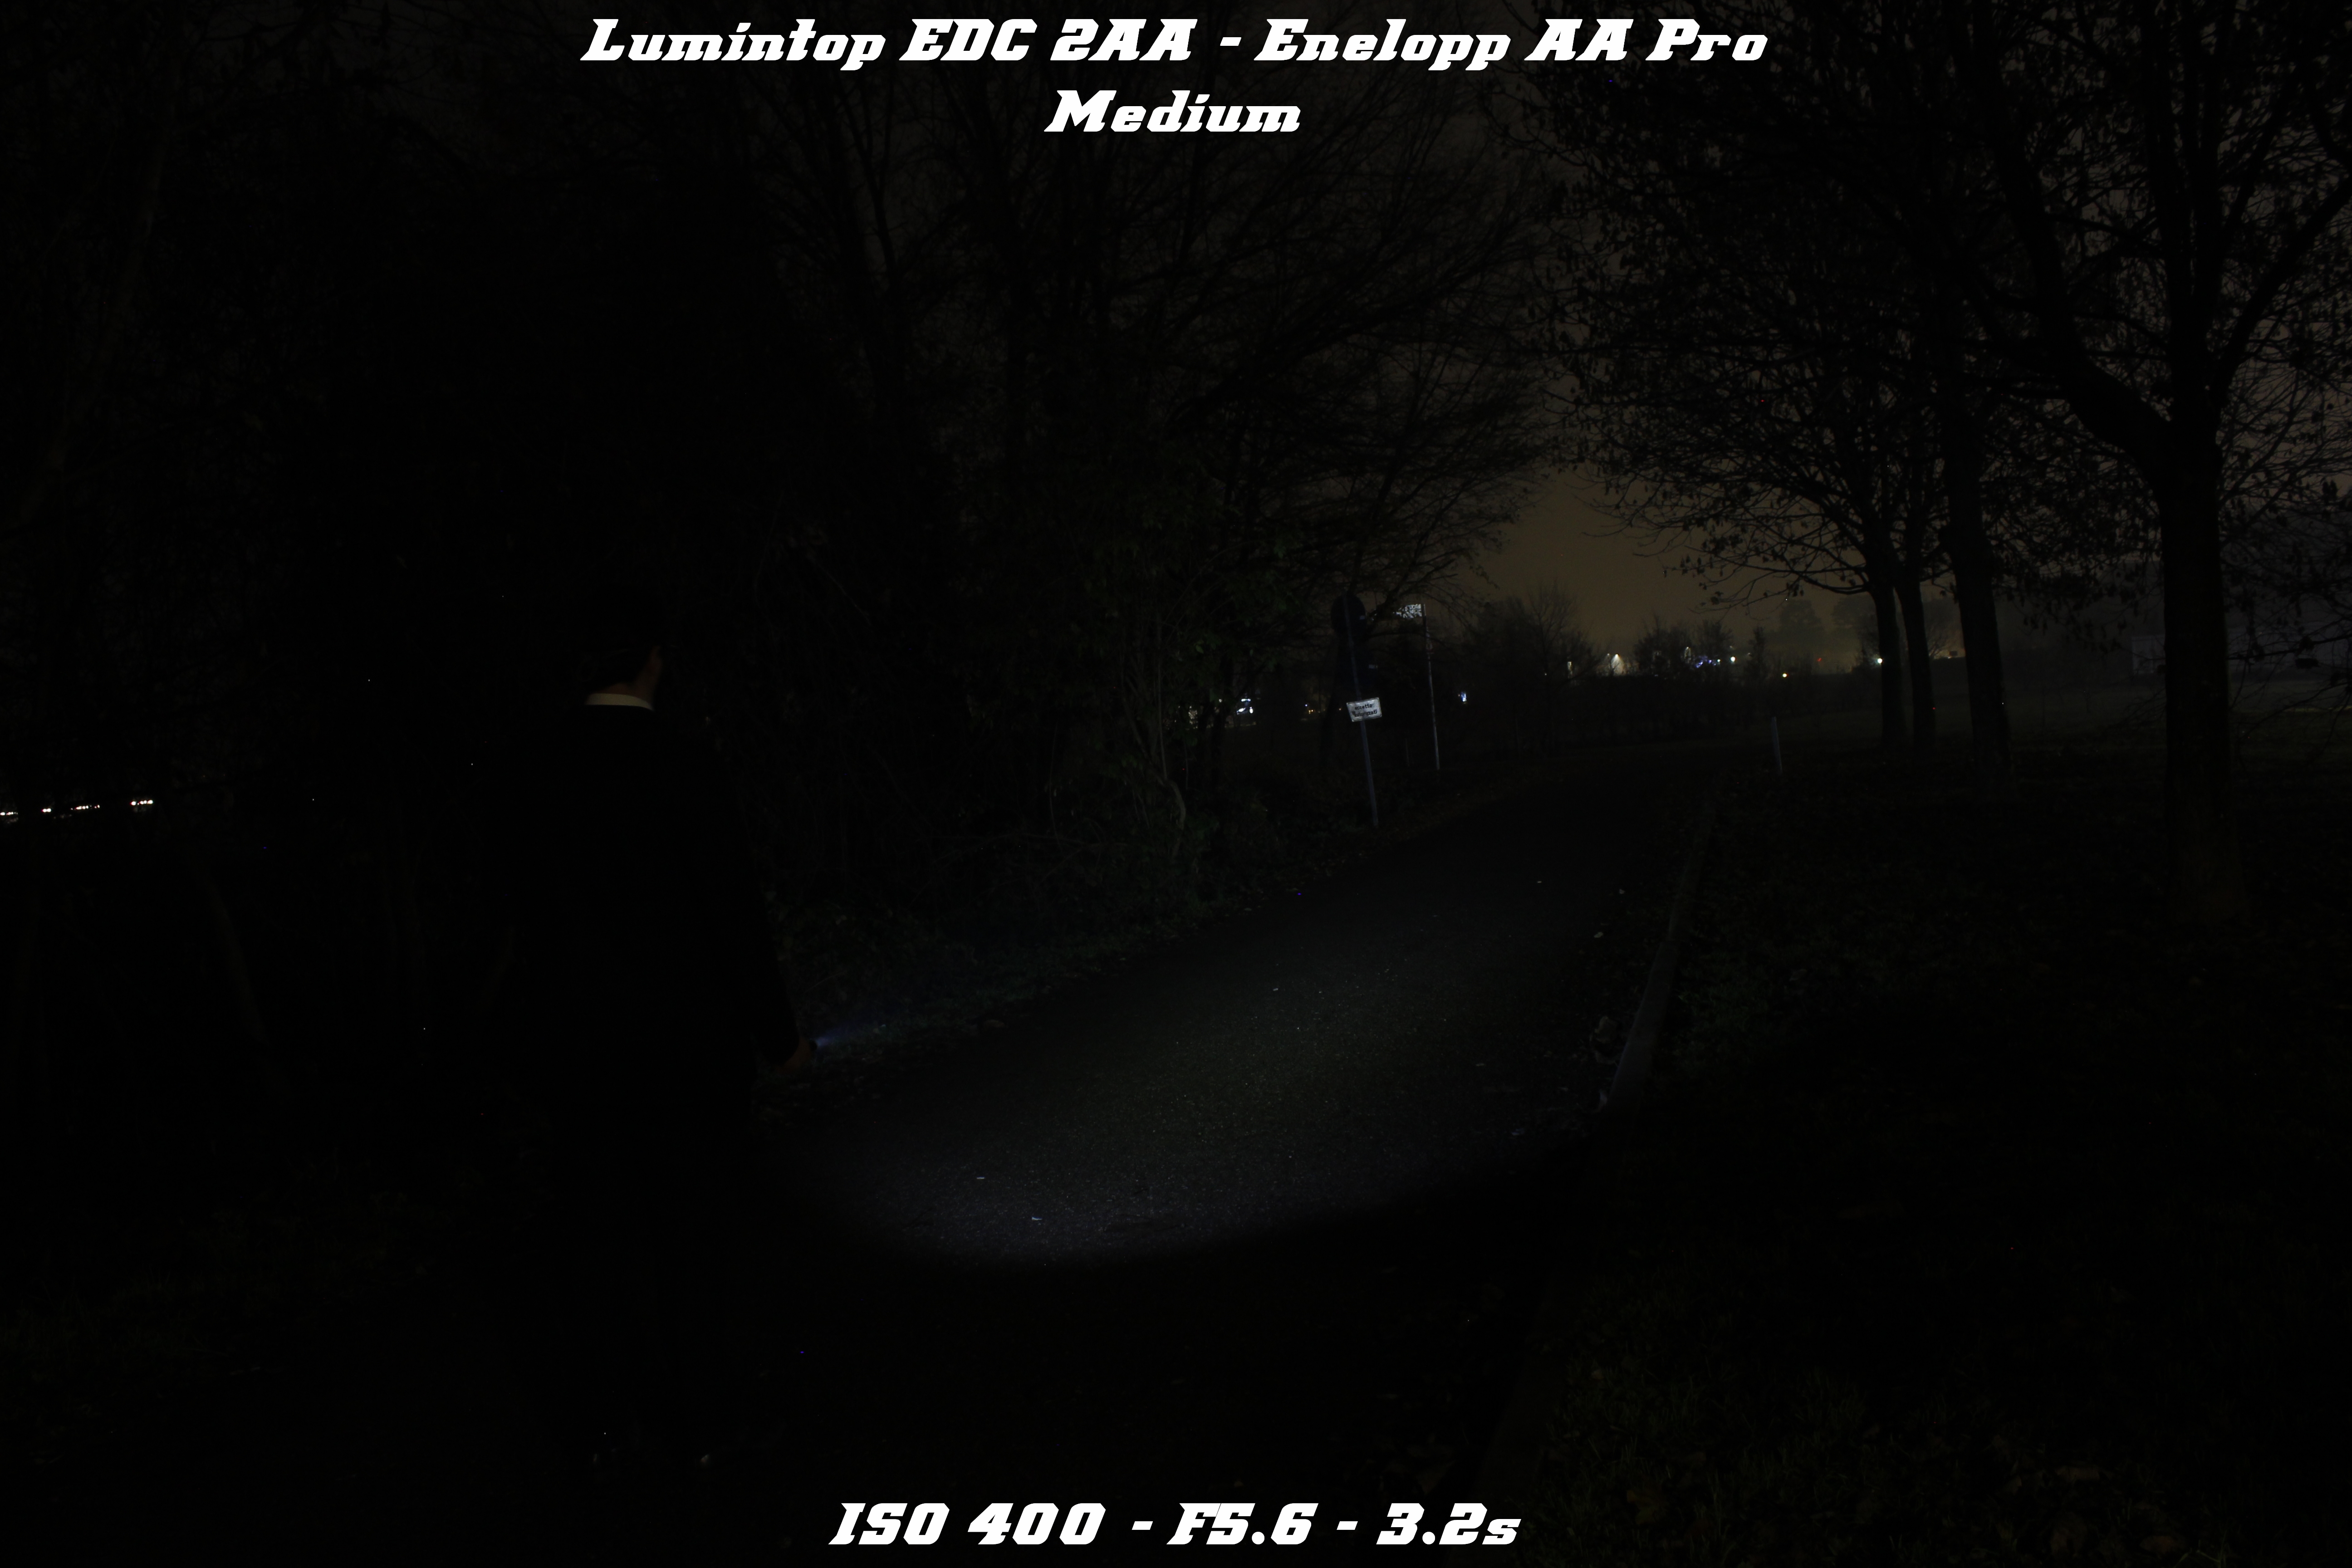 Lumintop_EDC_2AA_17.jpg